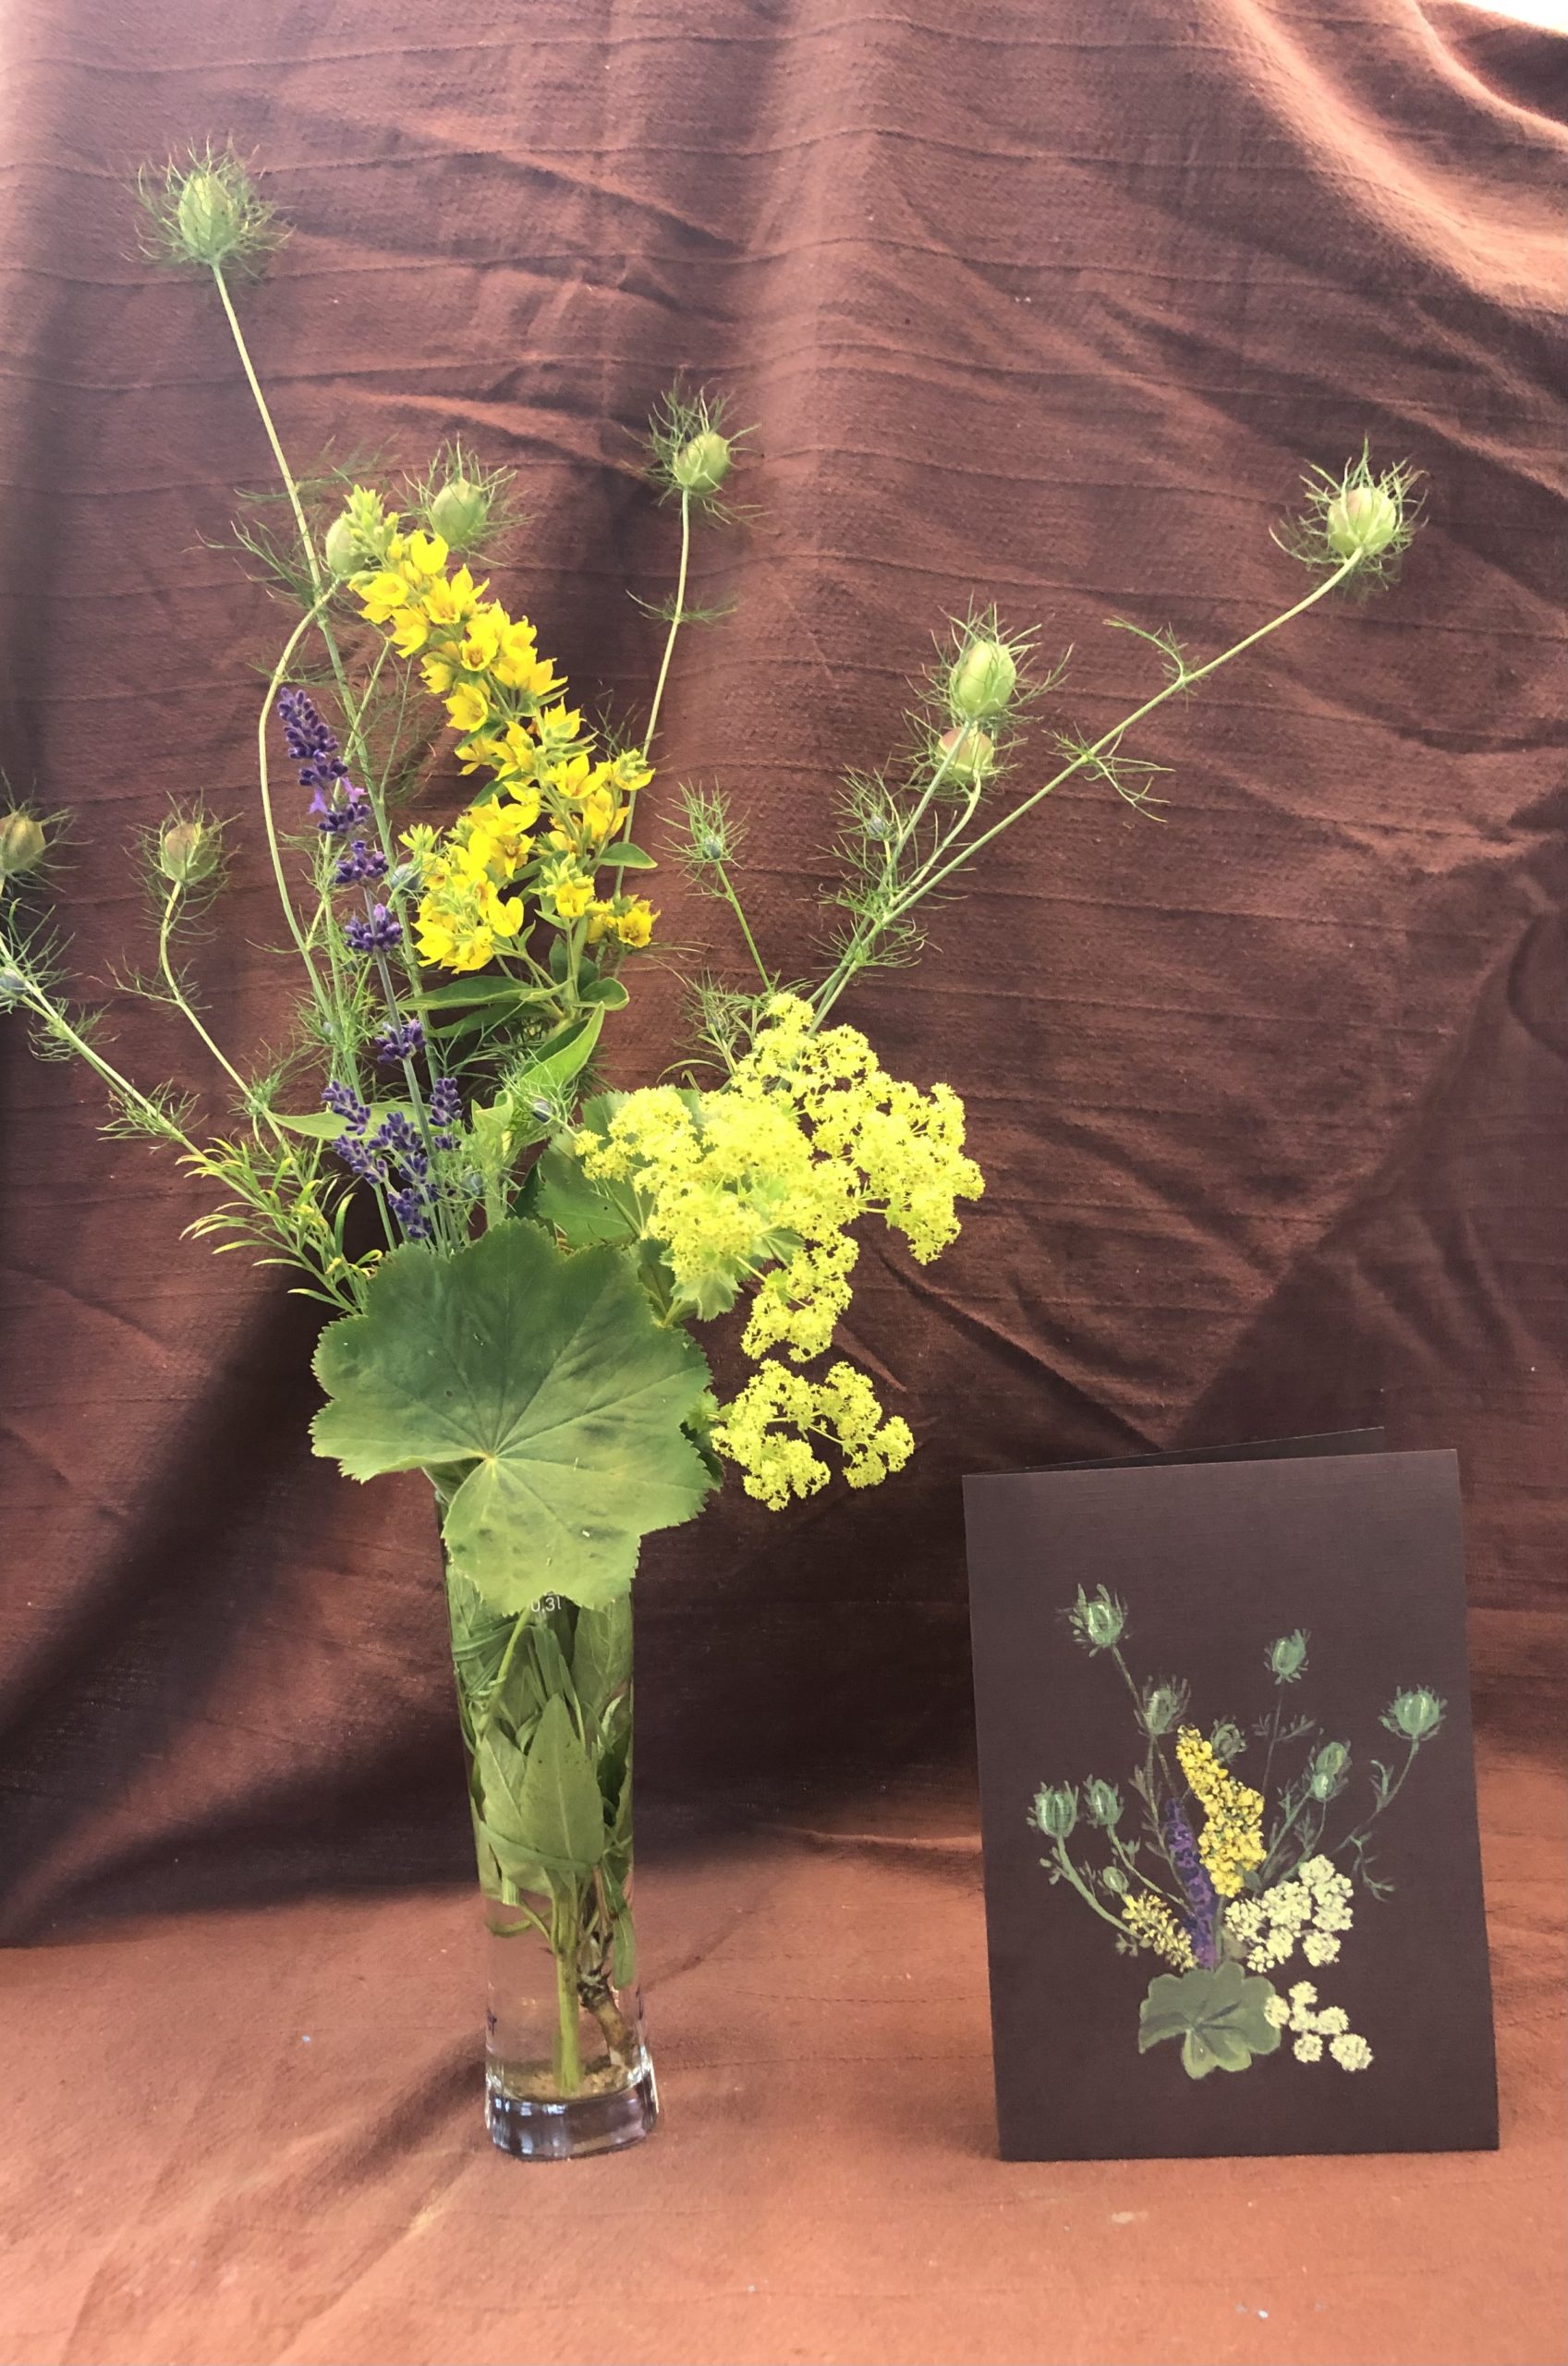 Blumenvase mit Feldblumen